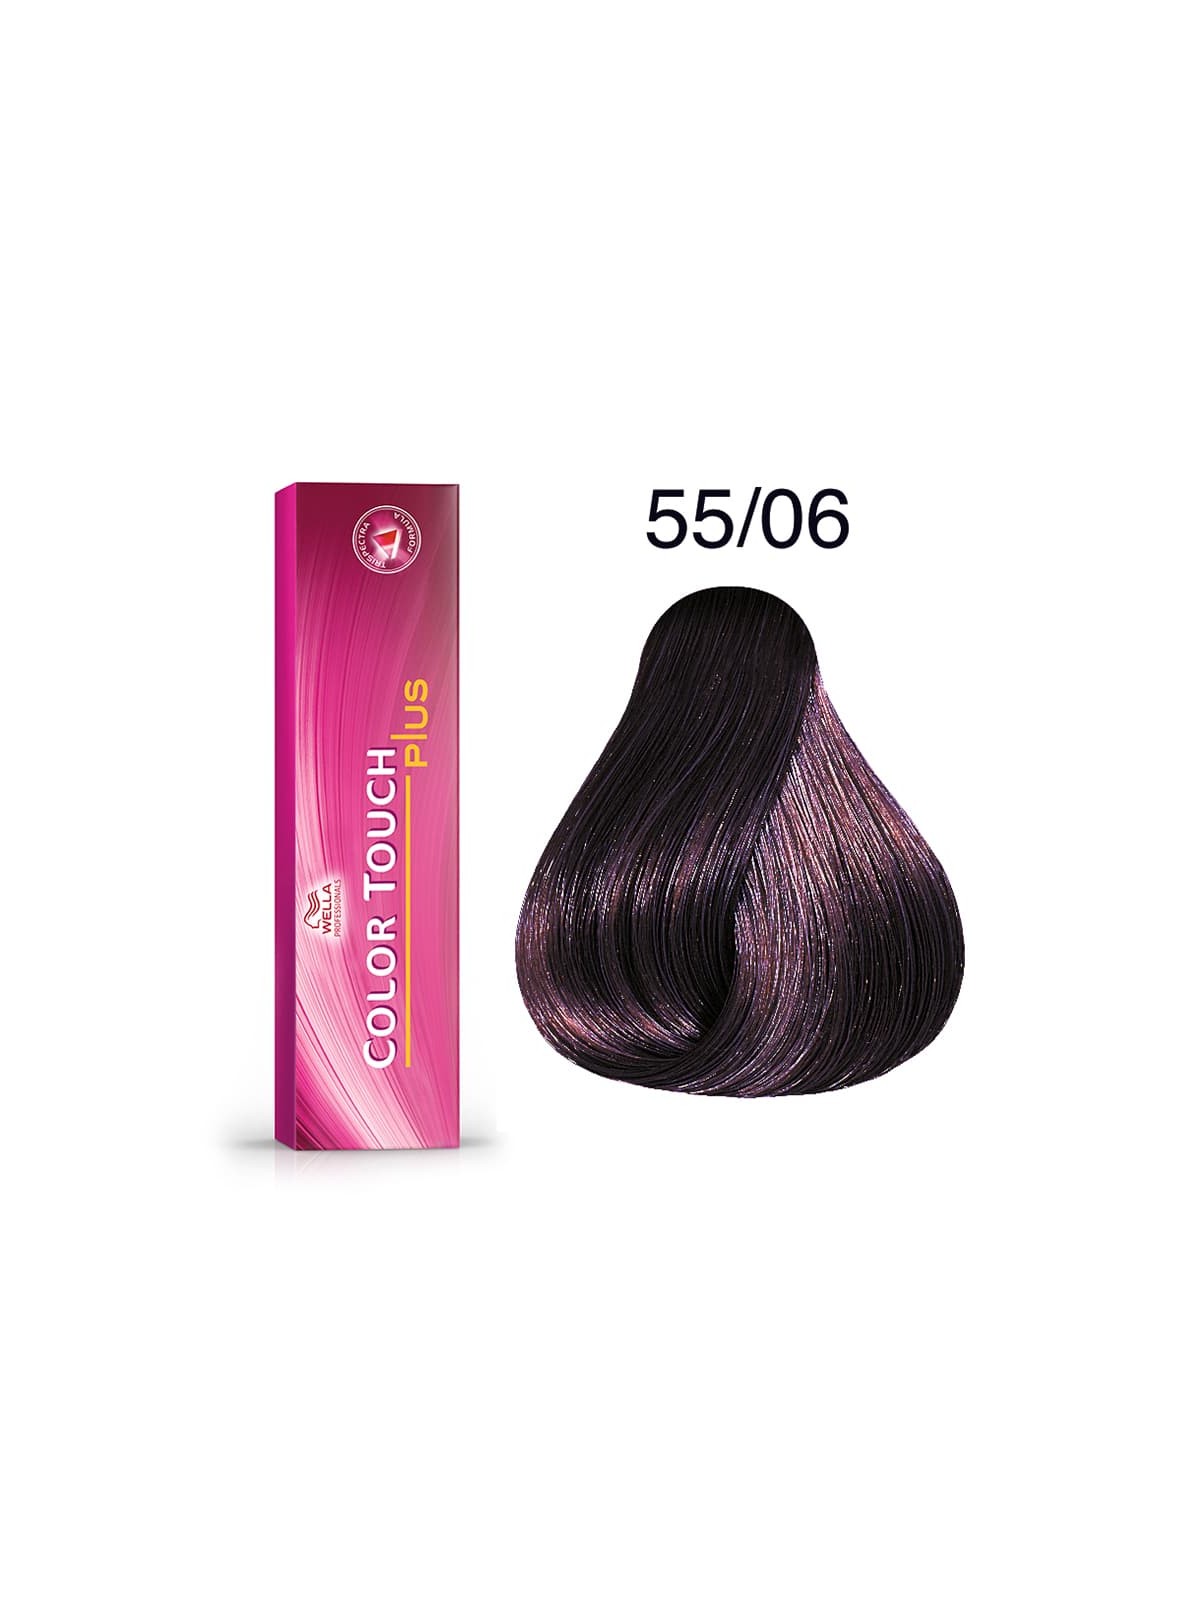 Tinte Wella Color Touch Plus 55/06 Castaño Claro Intenso Natural Violeta 60 ml.